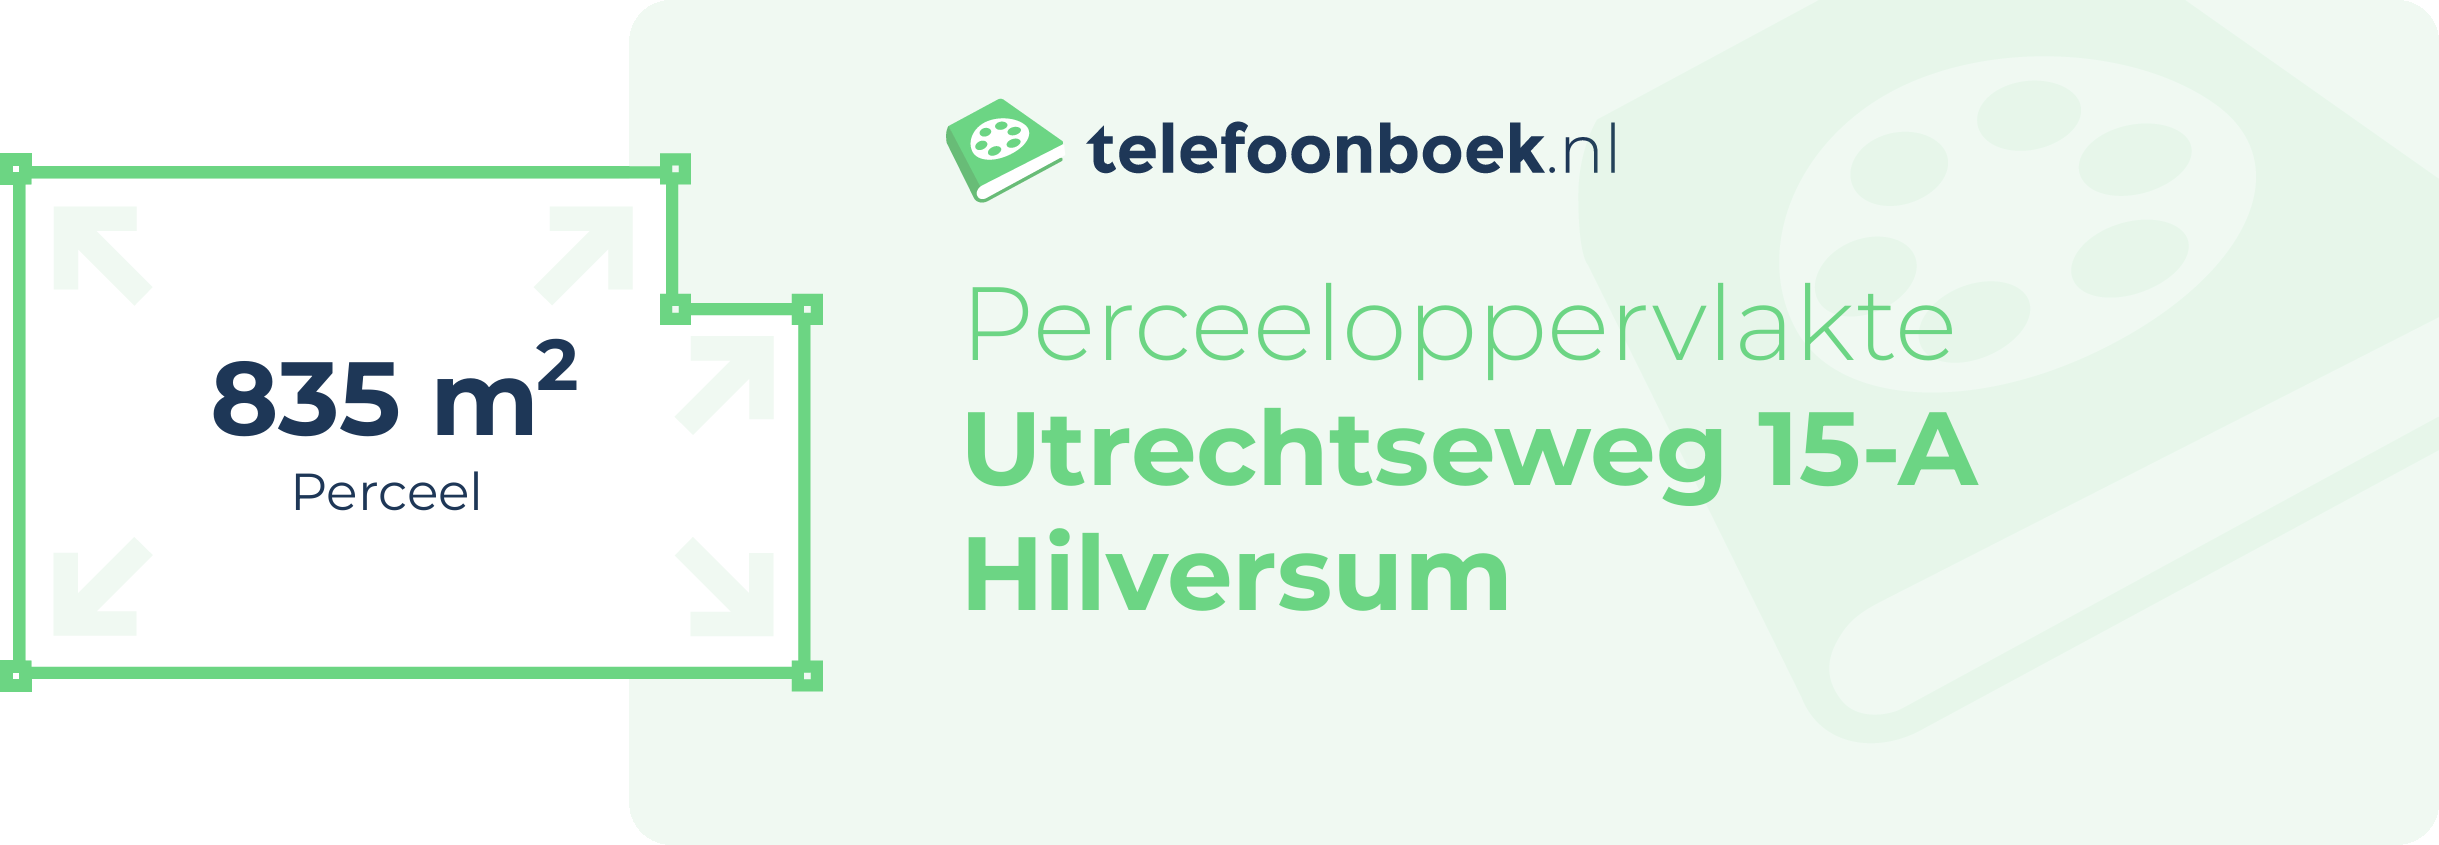 Perceeloppervlakte Utrechtseweg 15-A Hilversum